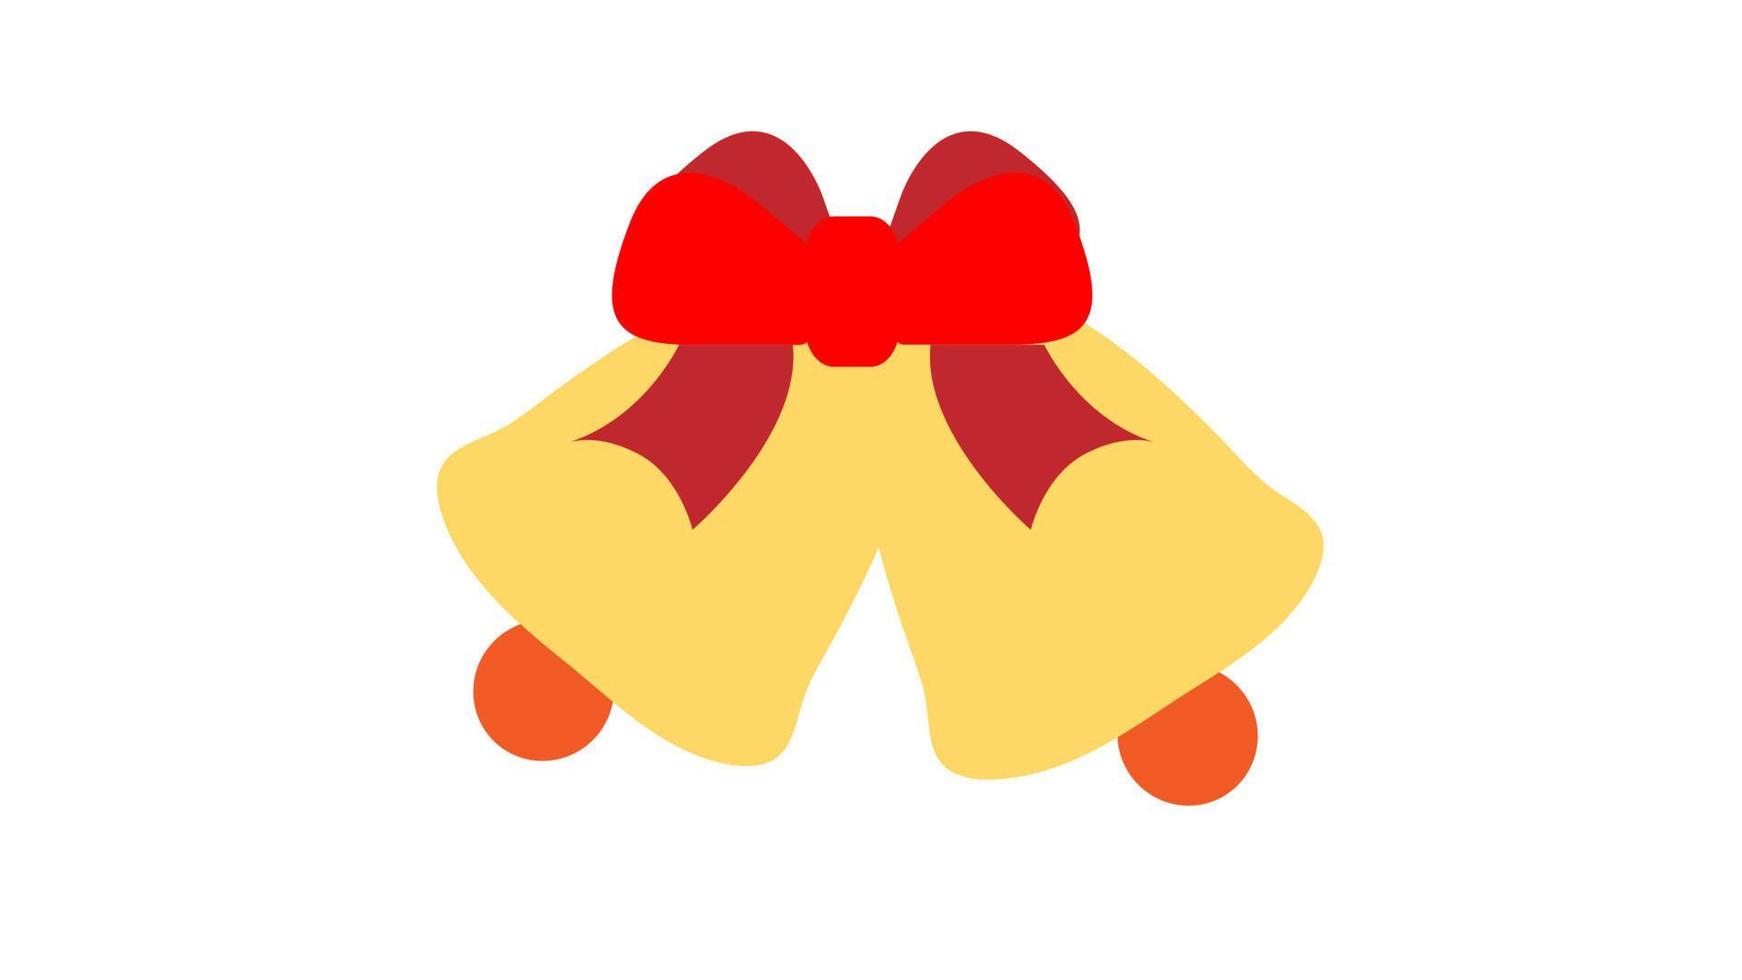 cloches de noël avec arc rouge sur fond blanc. décorations de Noël. illustration vectorielle eps10 vecteur